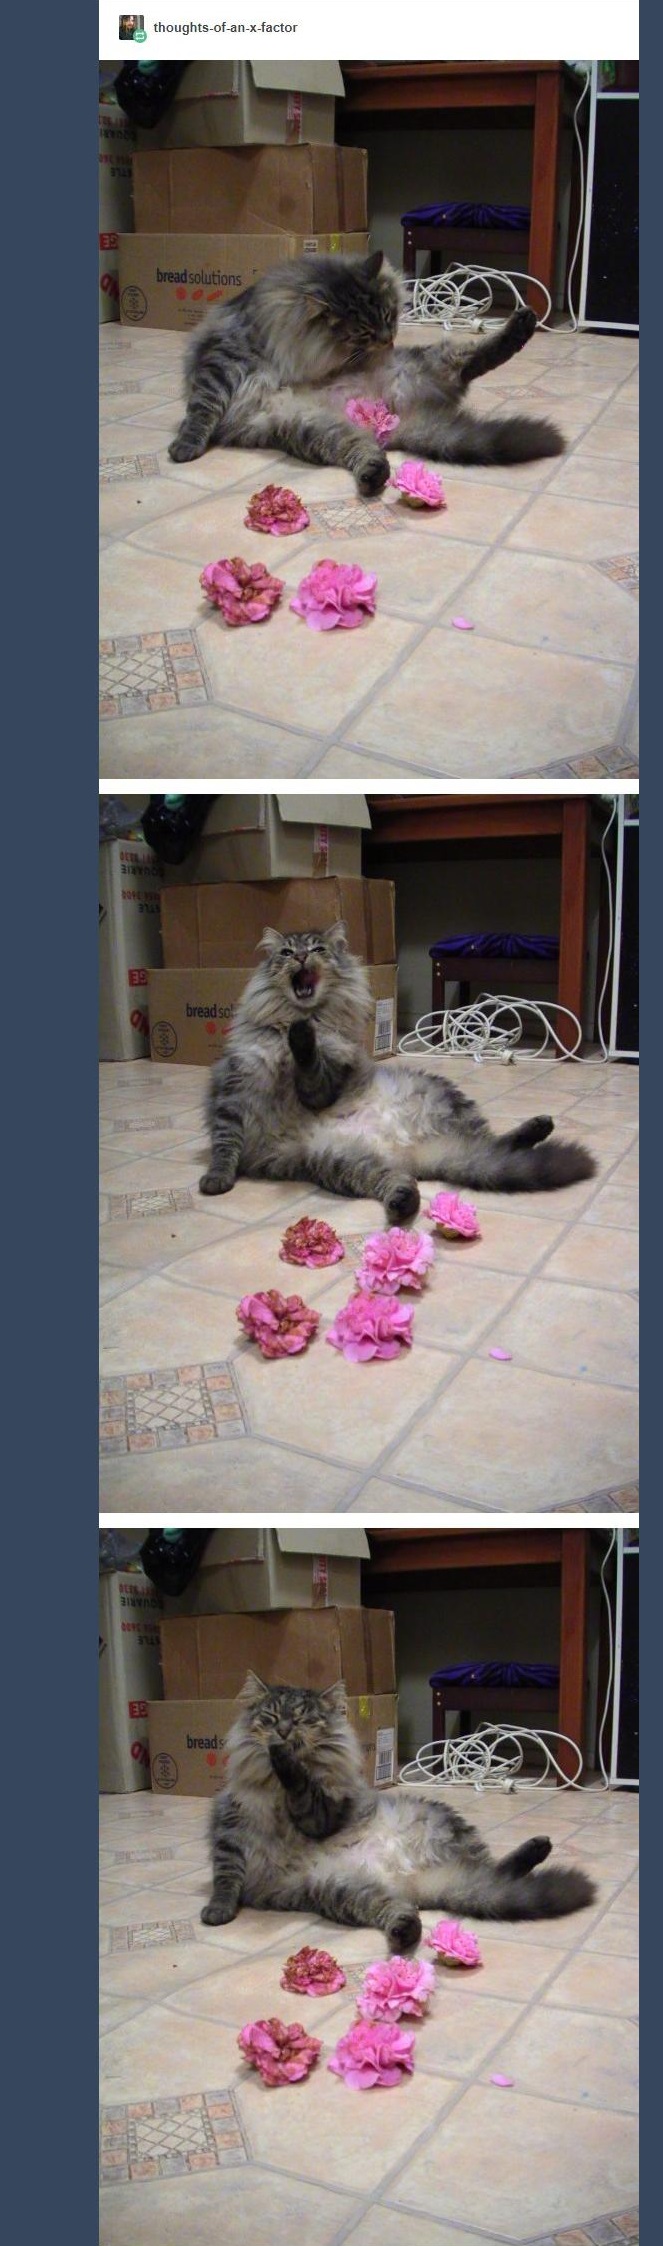 cat brings flowers 7